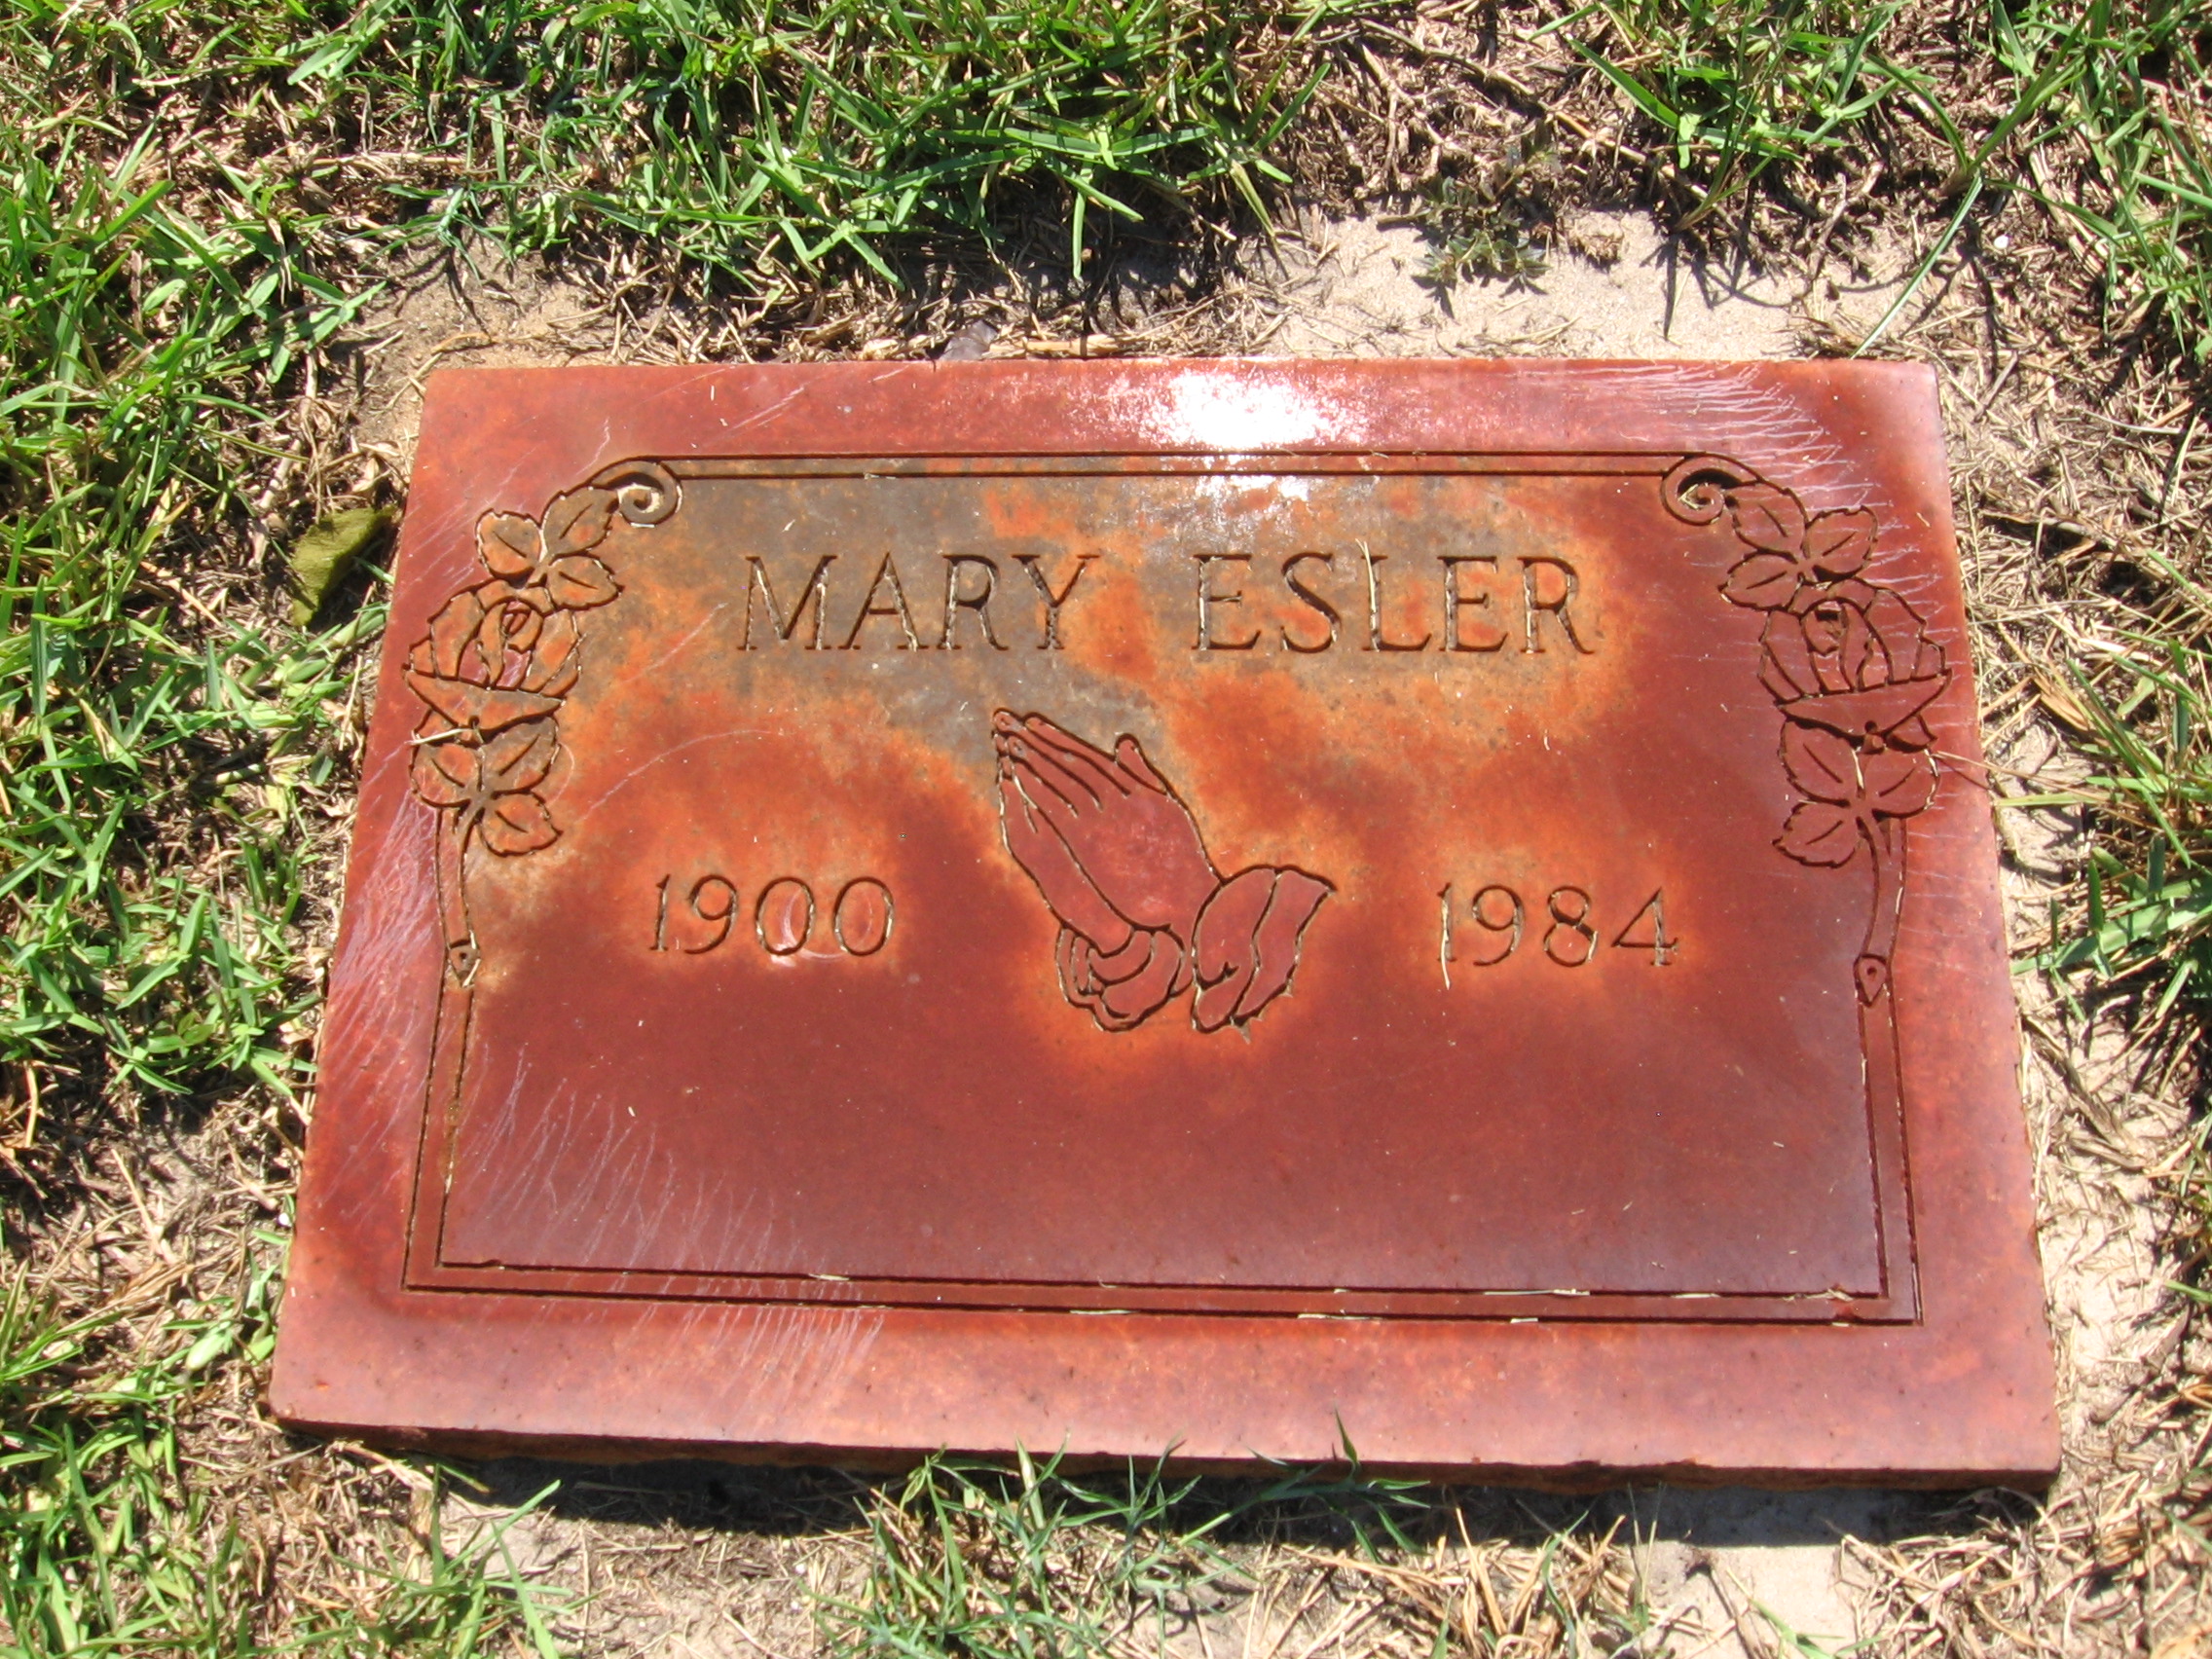 Mary Esler